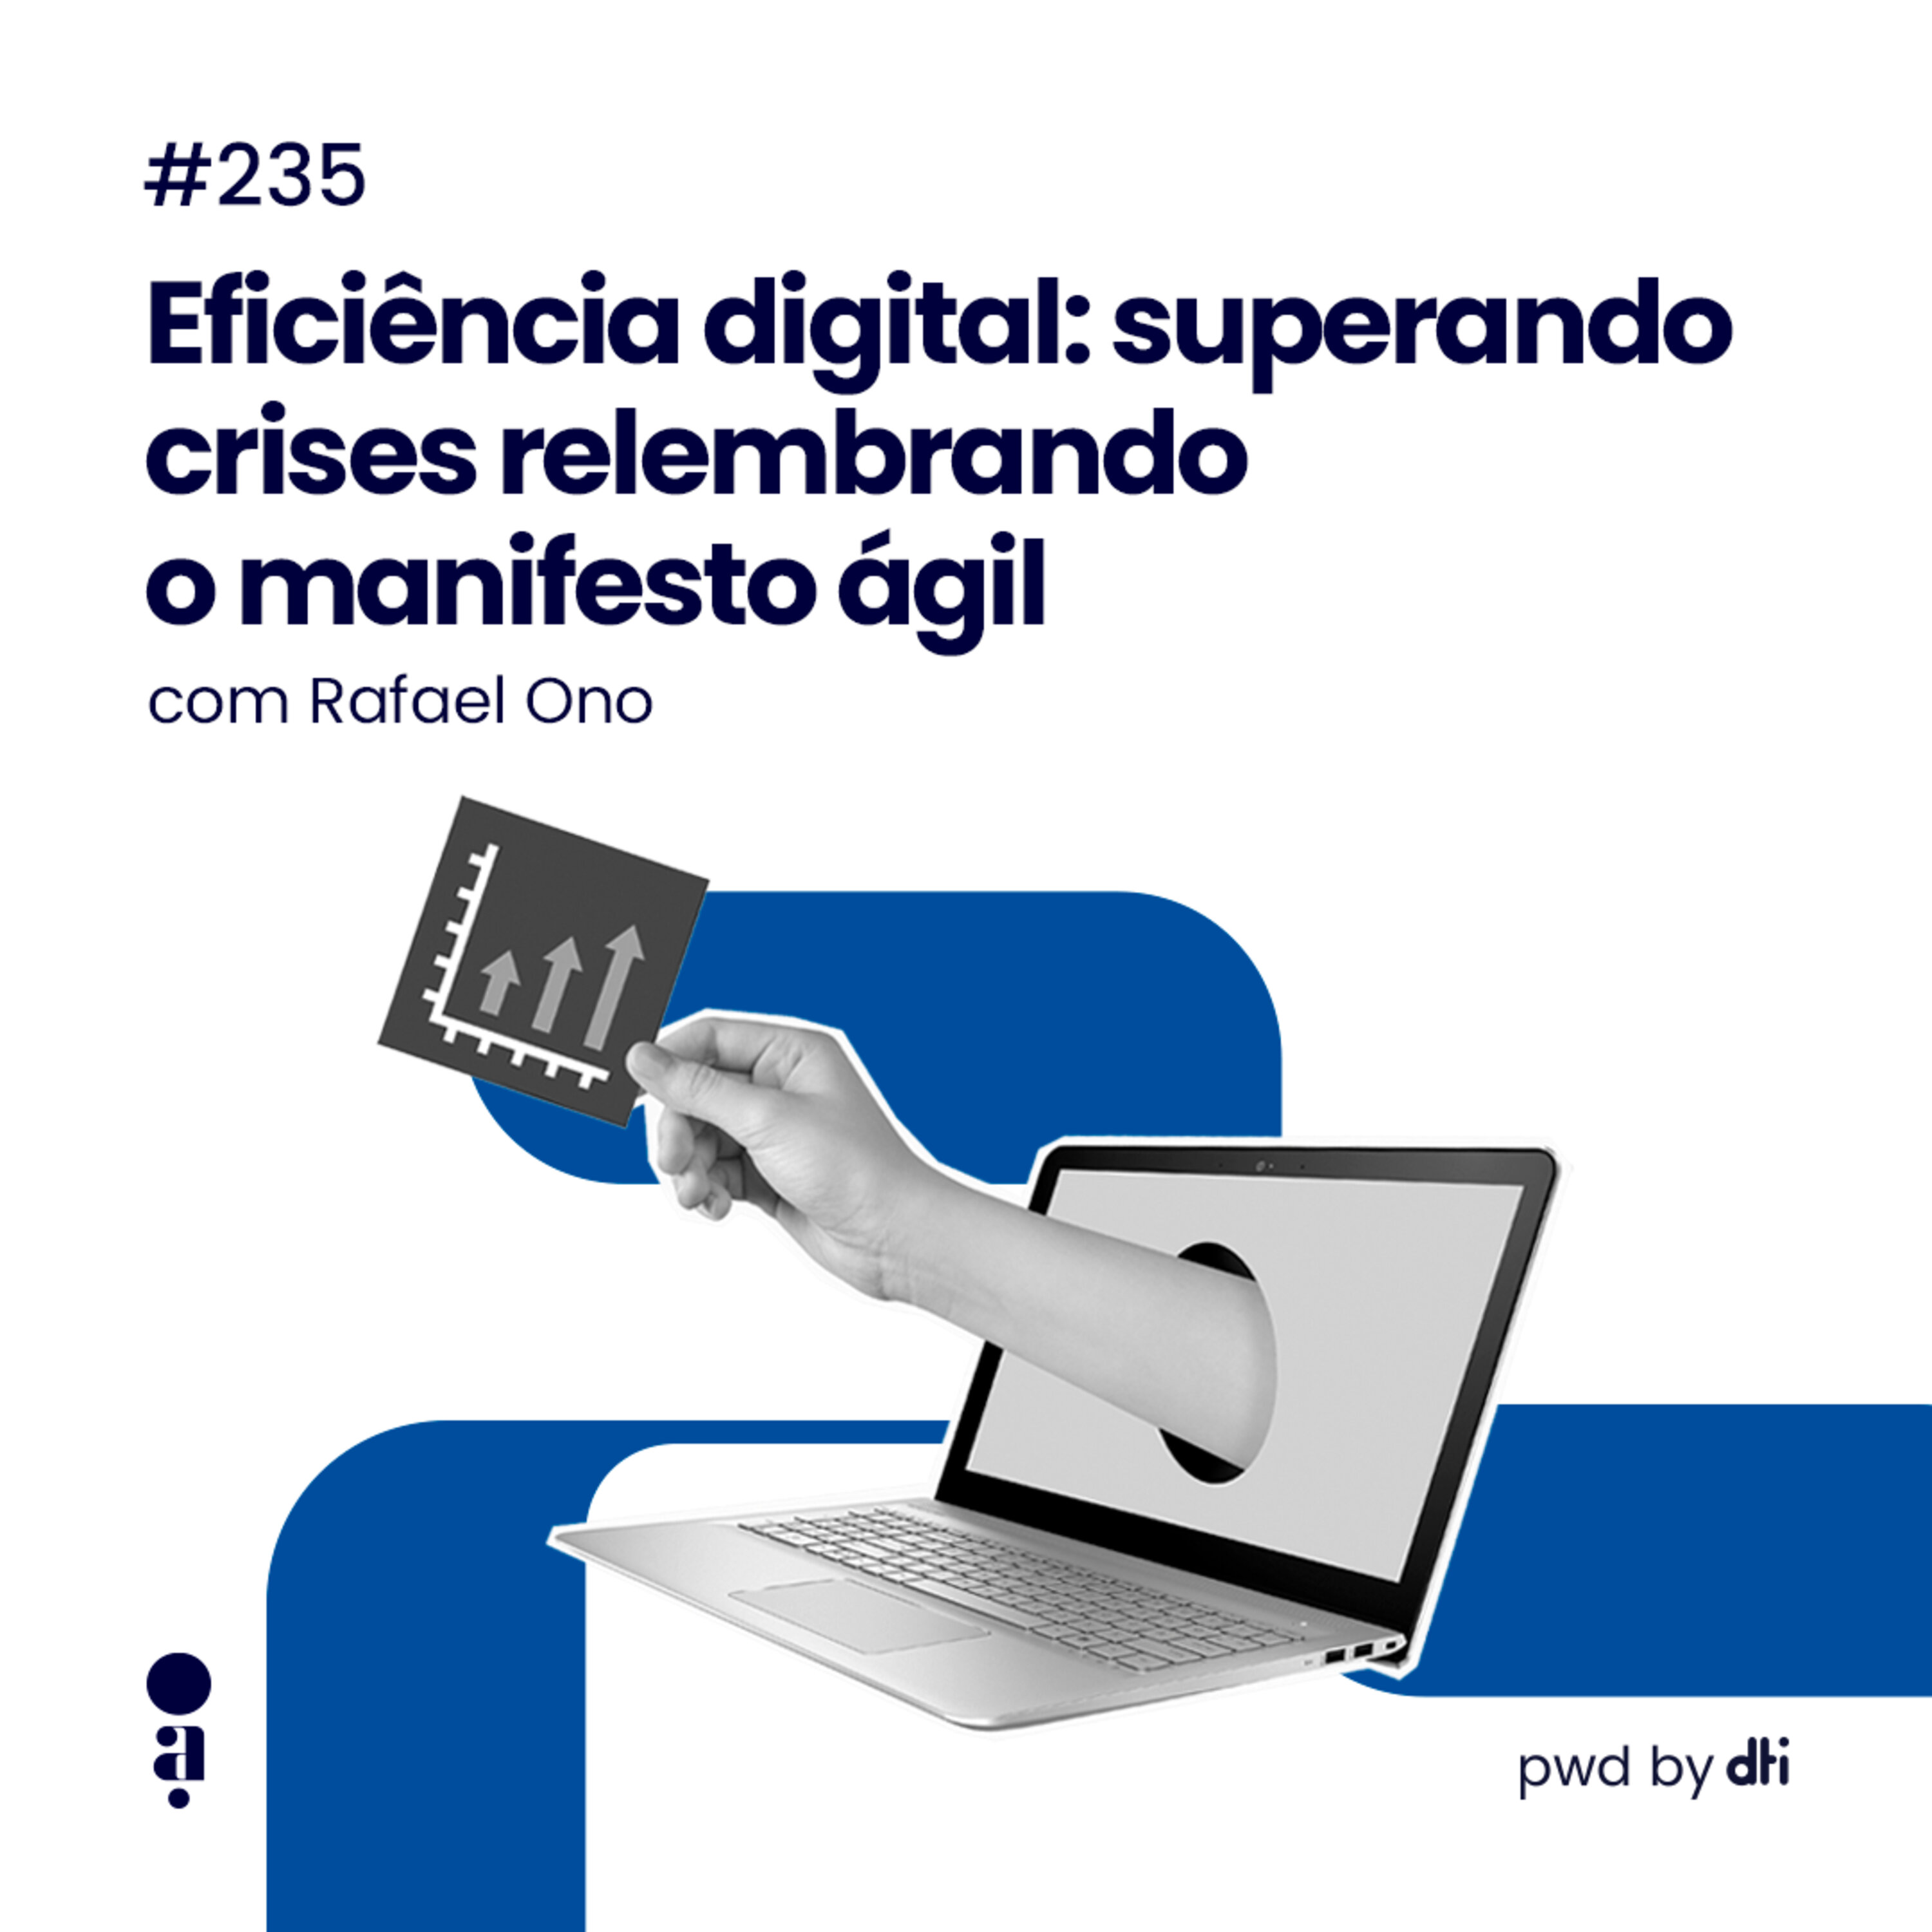 #235 - Eficiência digital: superando crises relembrando o manifesto ágil